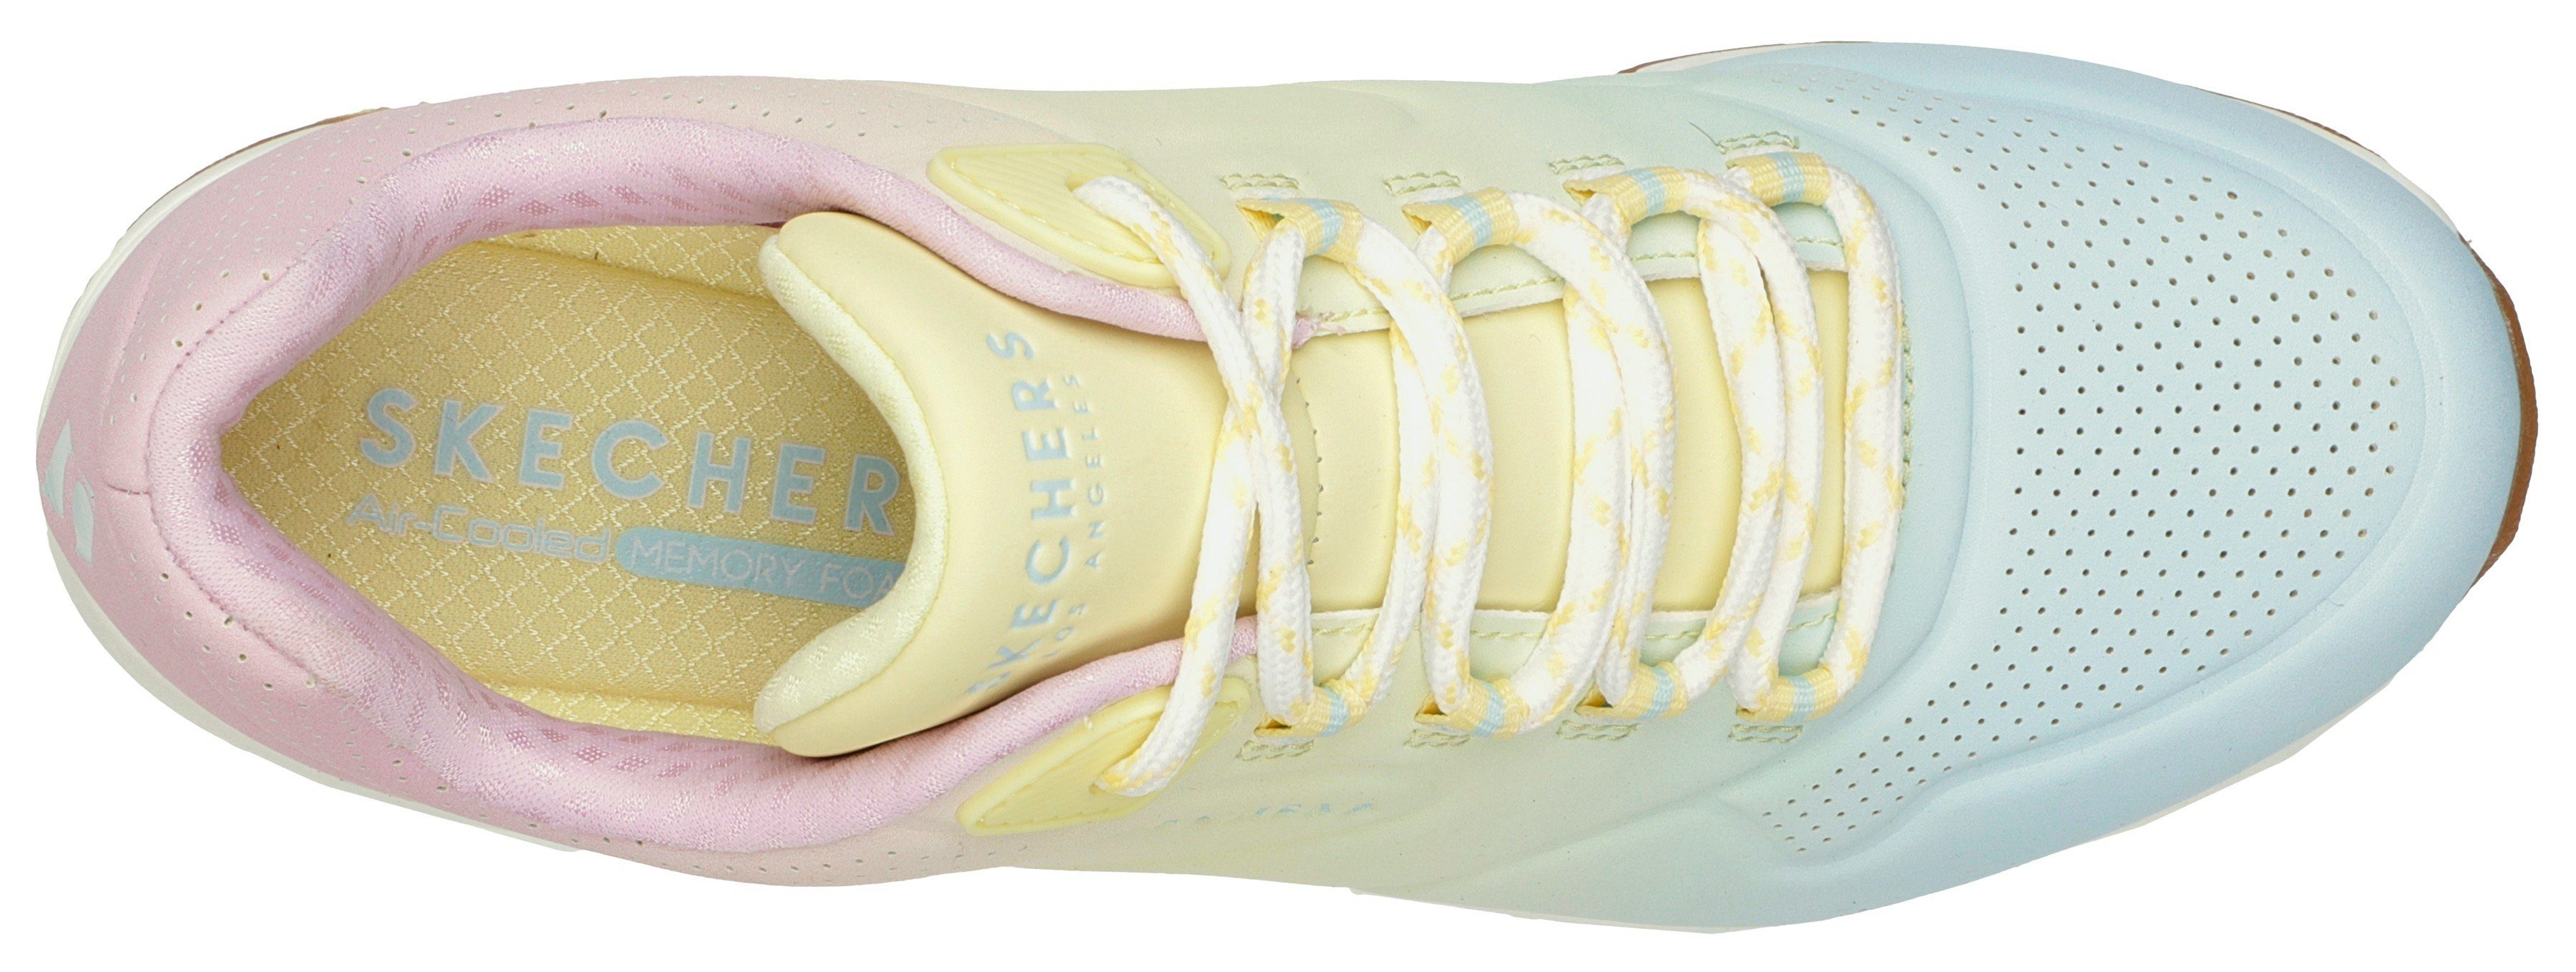 Sneaker leuchtender 2 in UNO OMBRE weiß-kombiniert Farbkombi AWAY Skechers